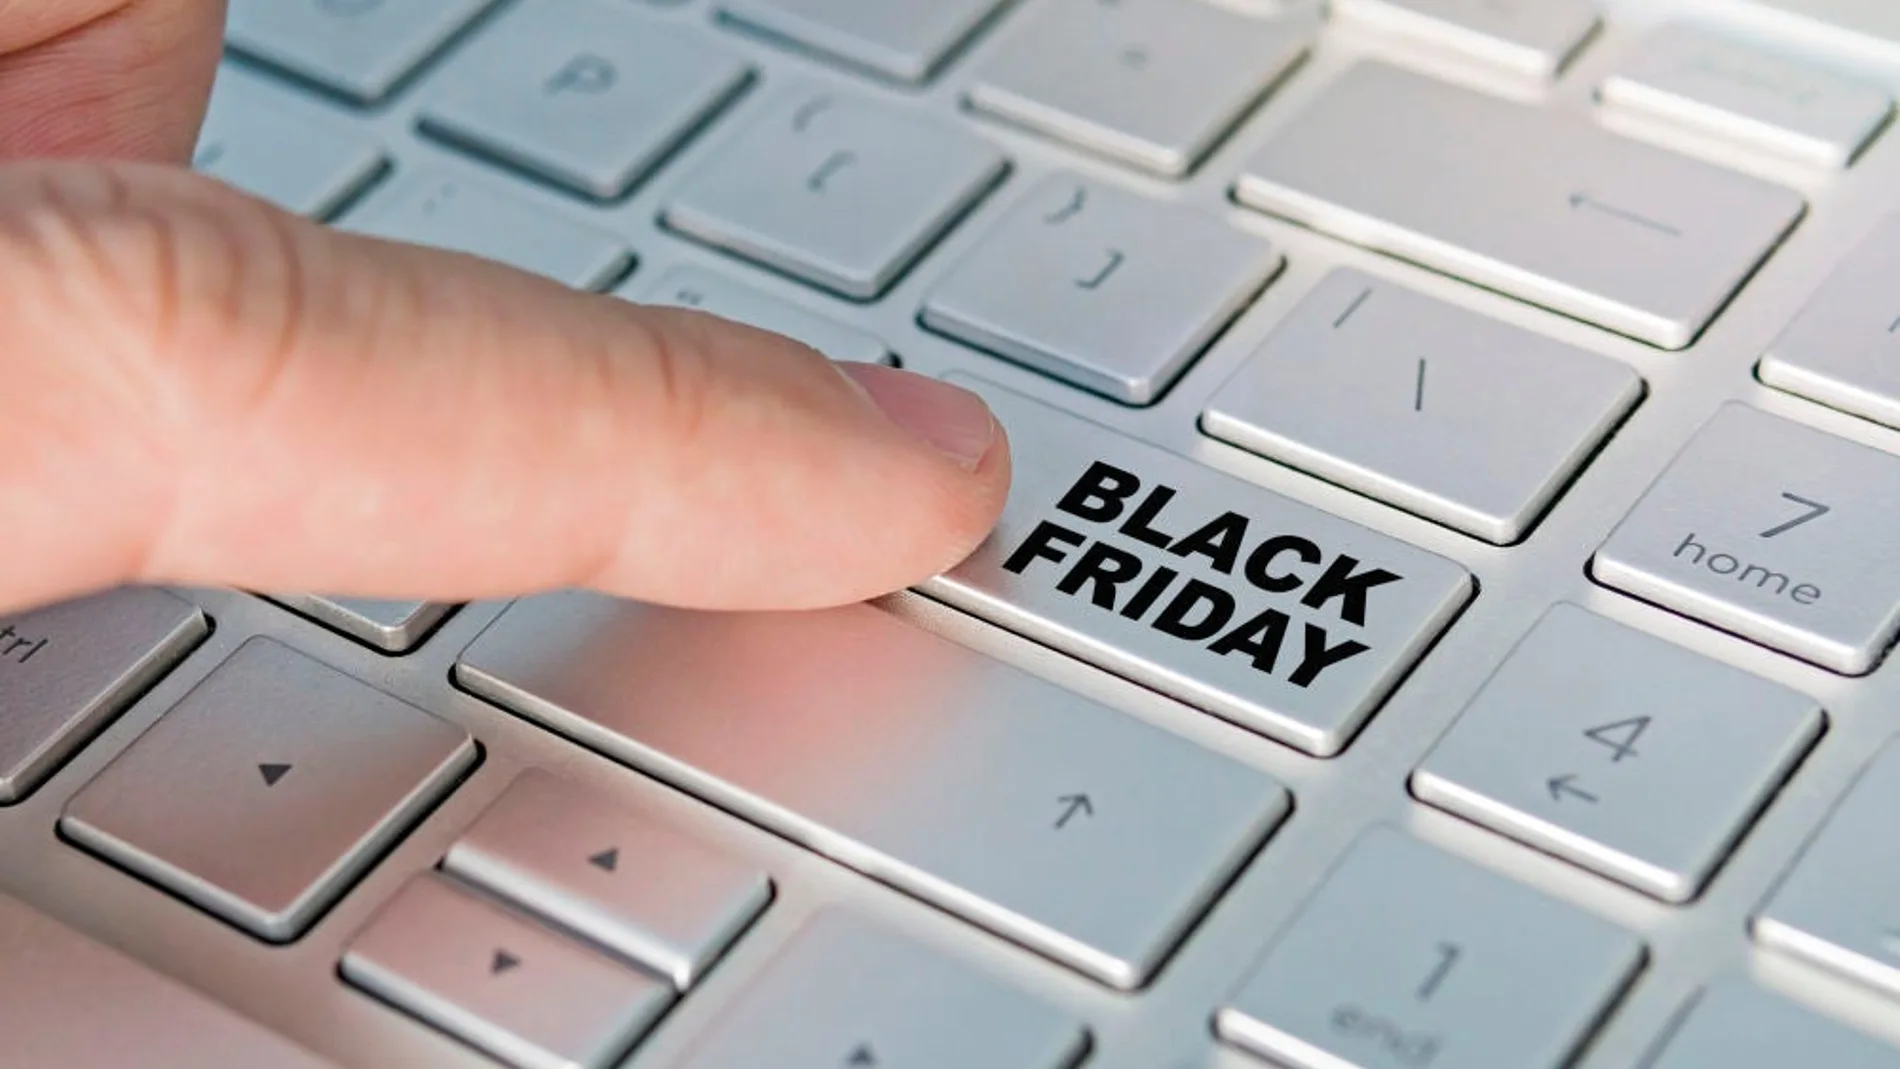 El e-commerce se refuerza en el Black Friday y Cyber Monday por el coronavirus y posible escasez de suministro